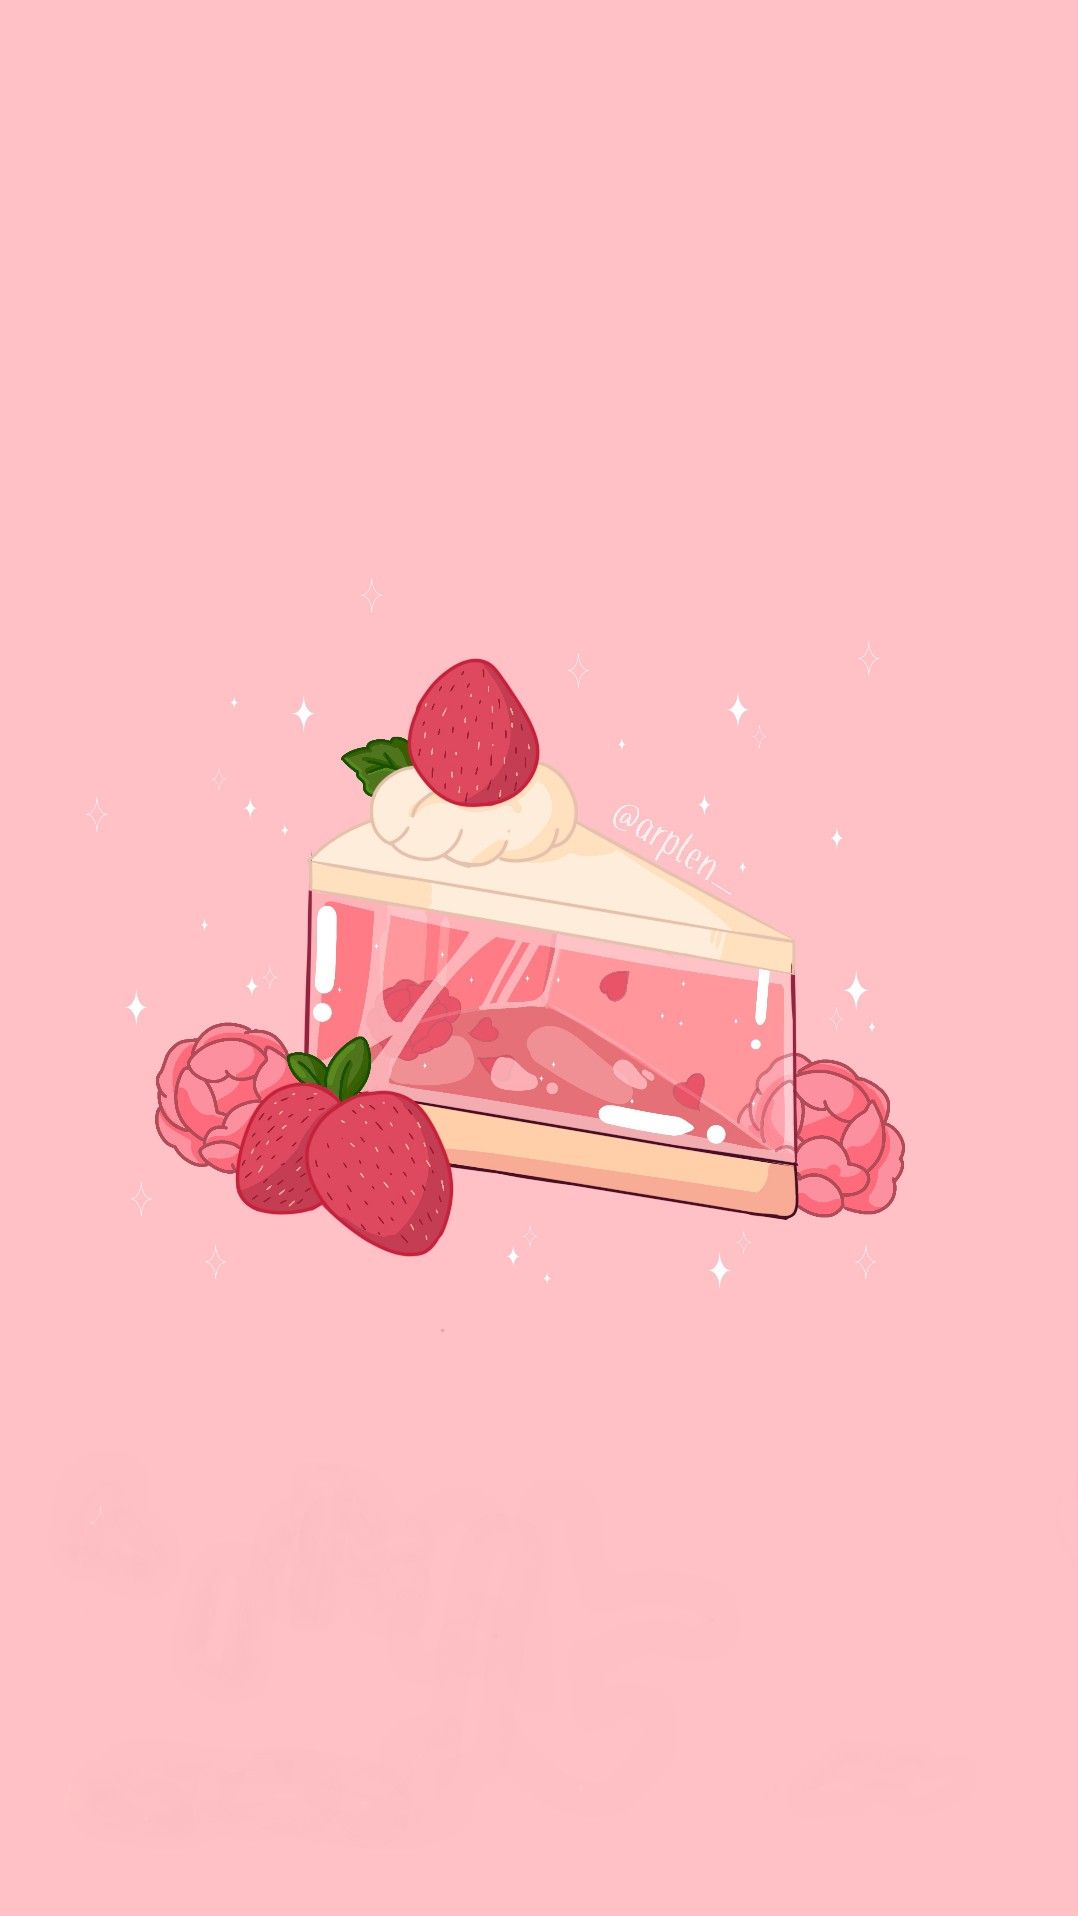 Strawberry cake. Fondos de pantalla de iphone, Fondos bonitos para fotos, Pegatinas bonitas